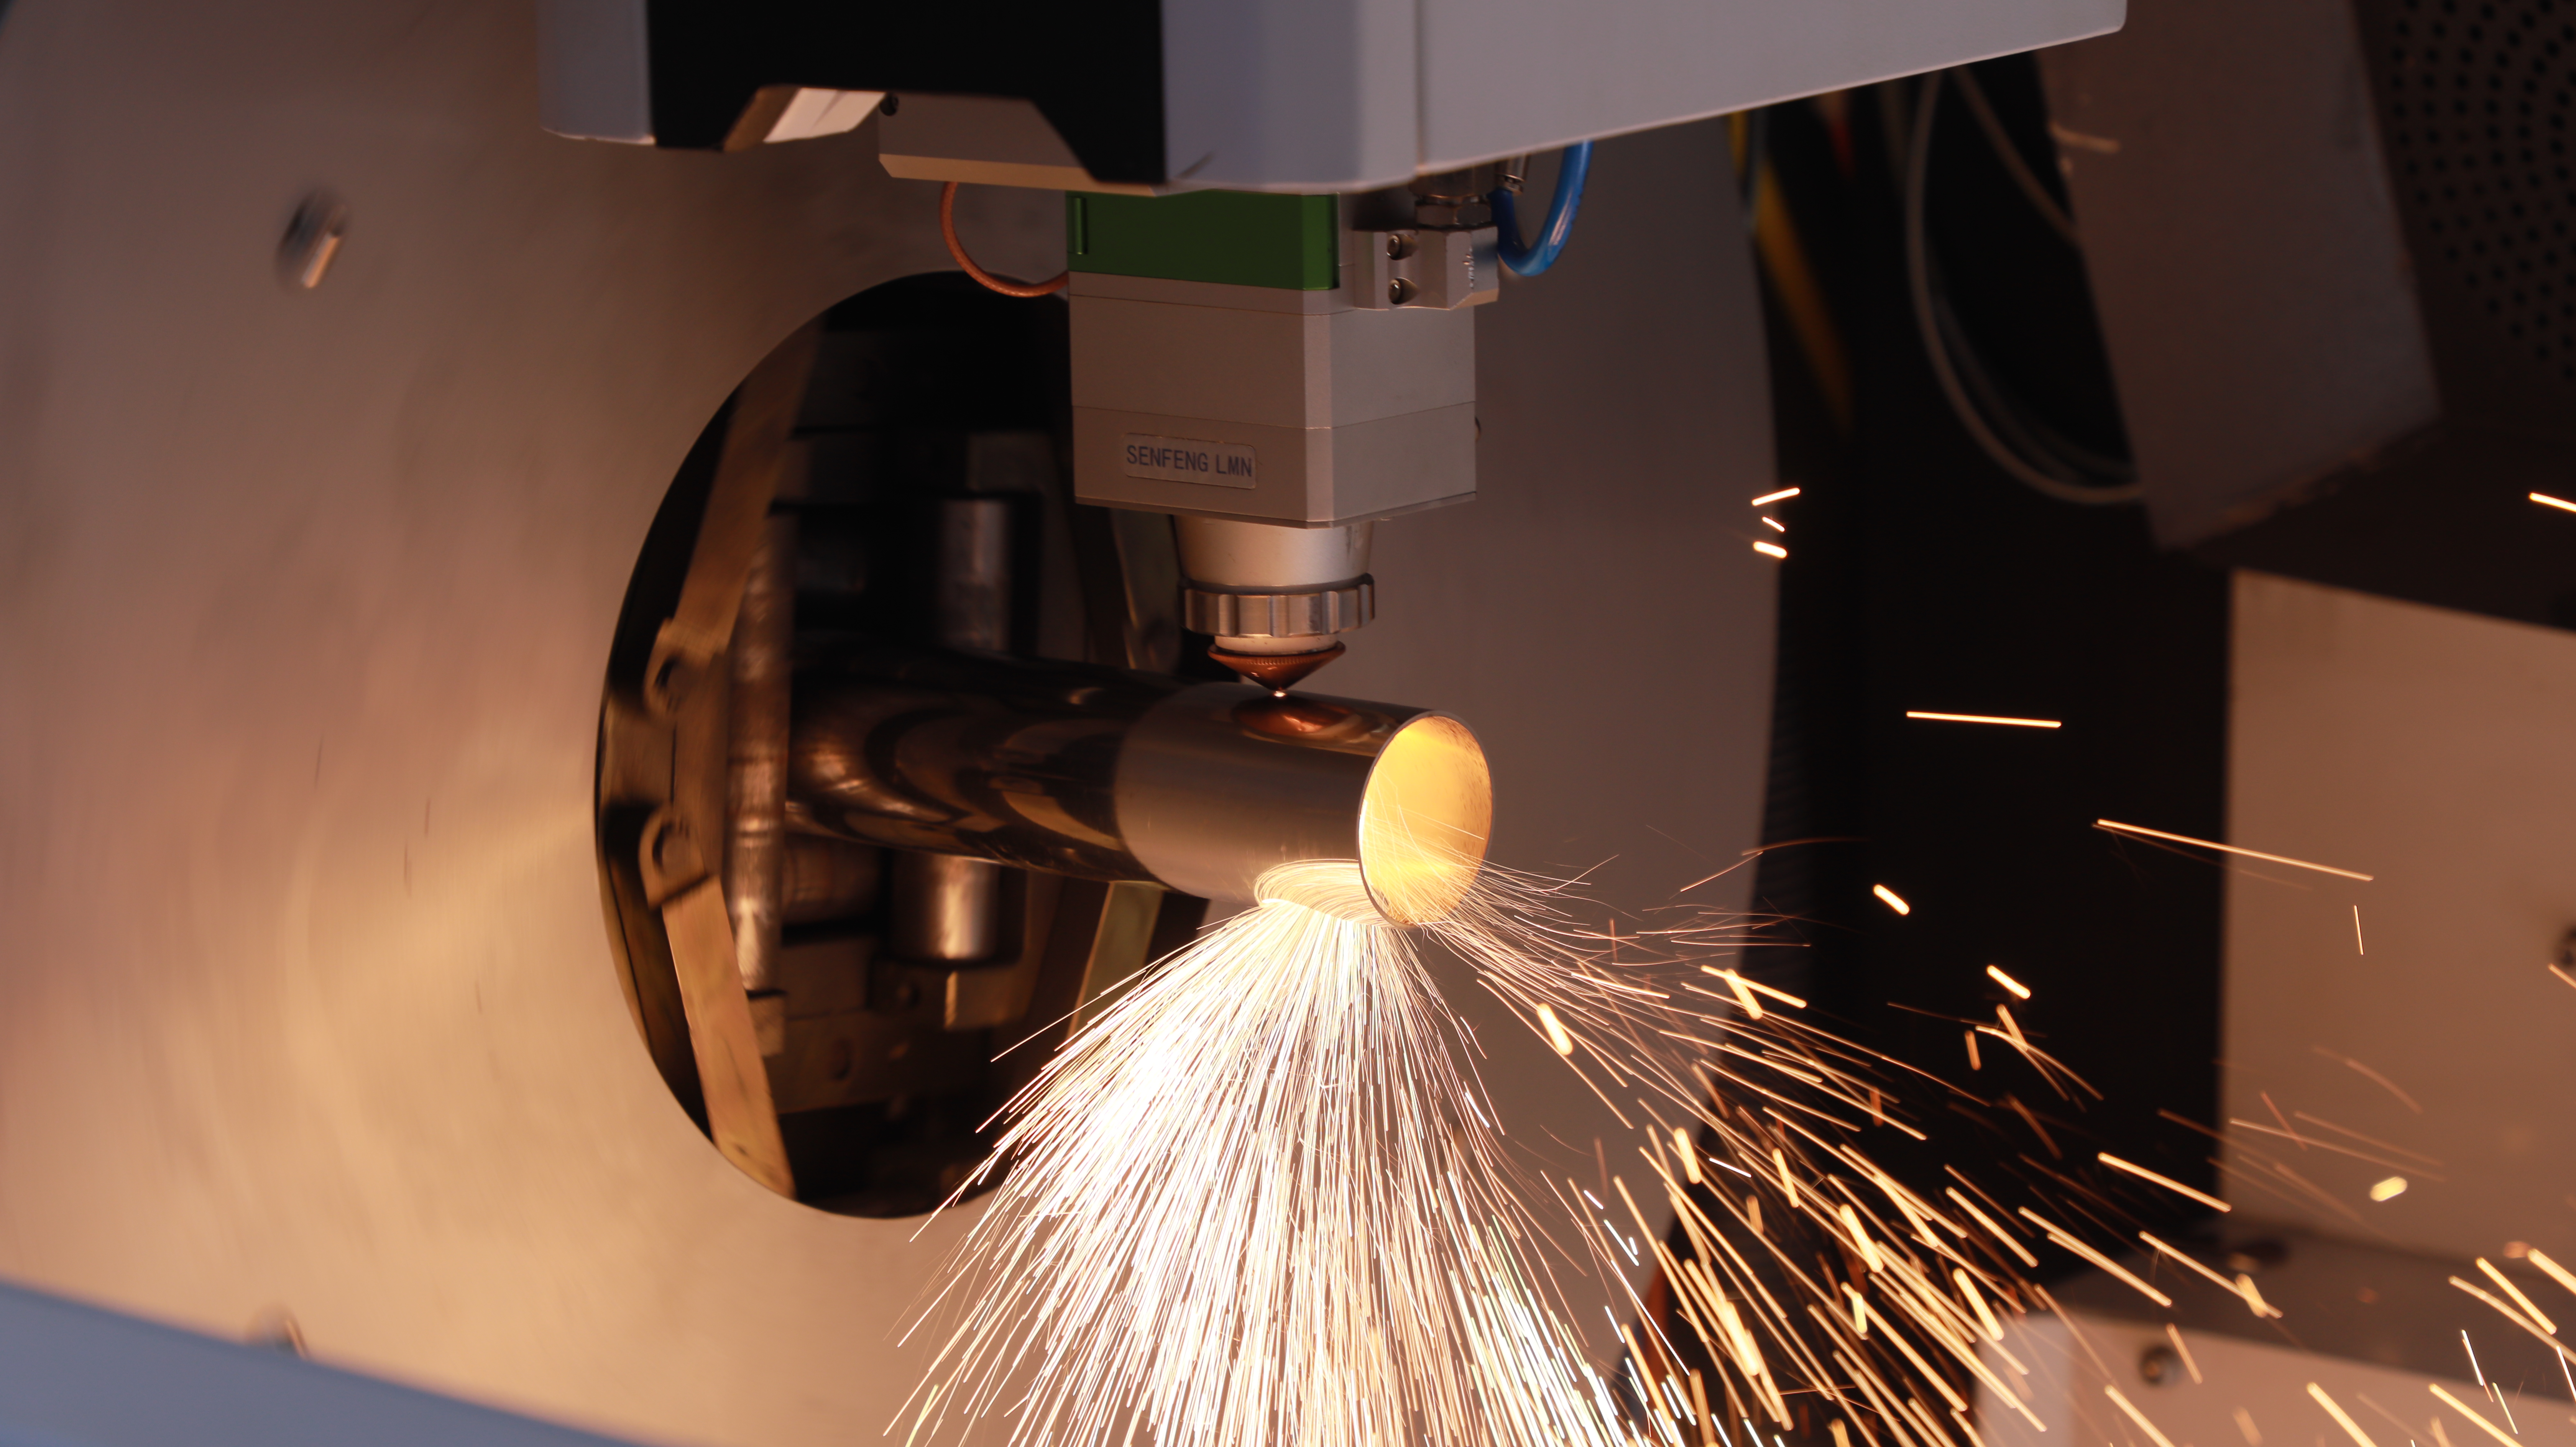 metal tube laser cutting machine